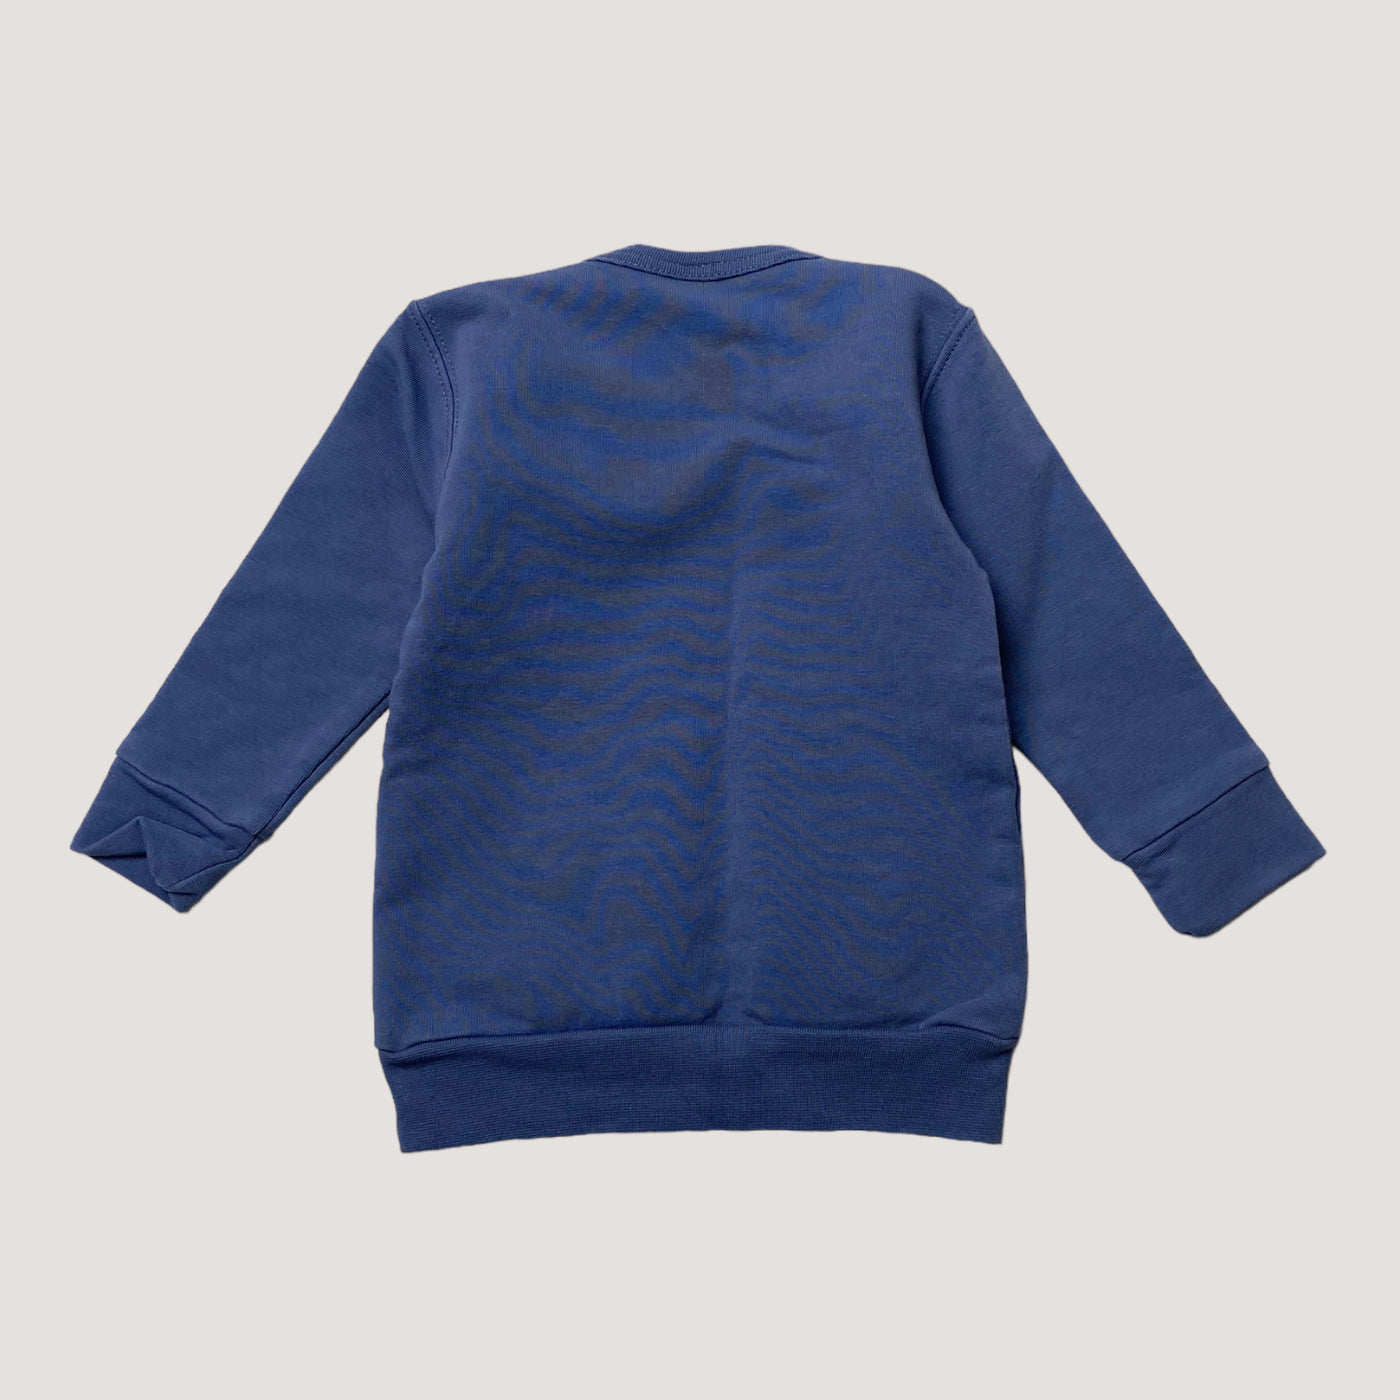 Blaa sweatshirt, seal | 62/68cm